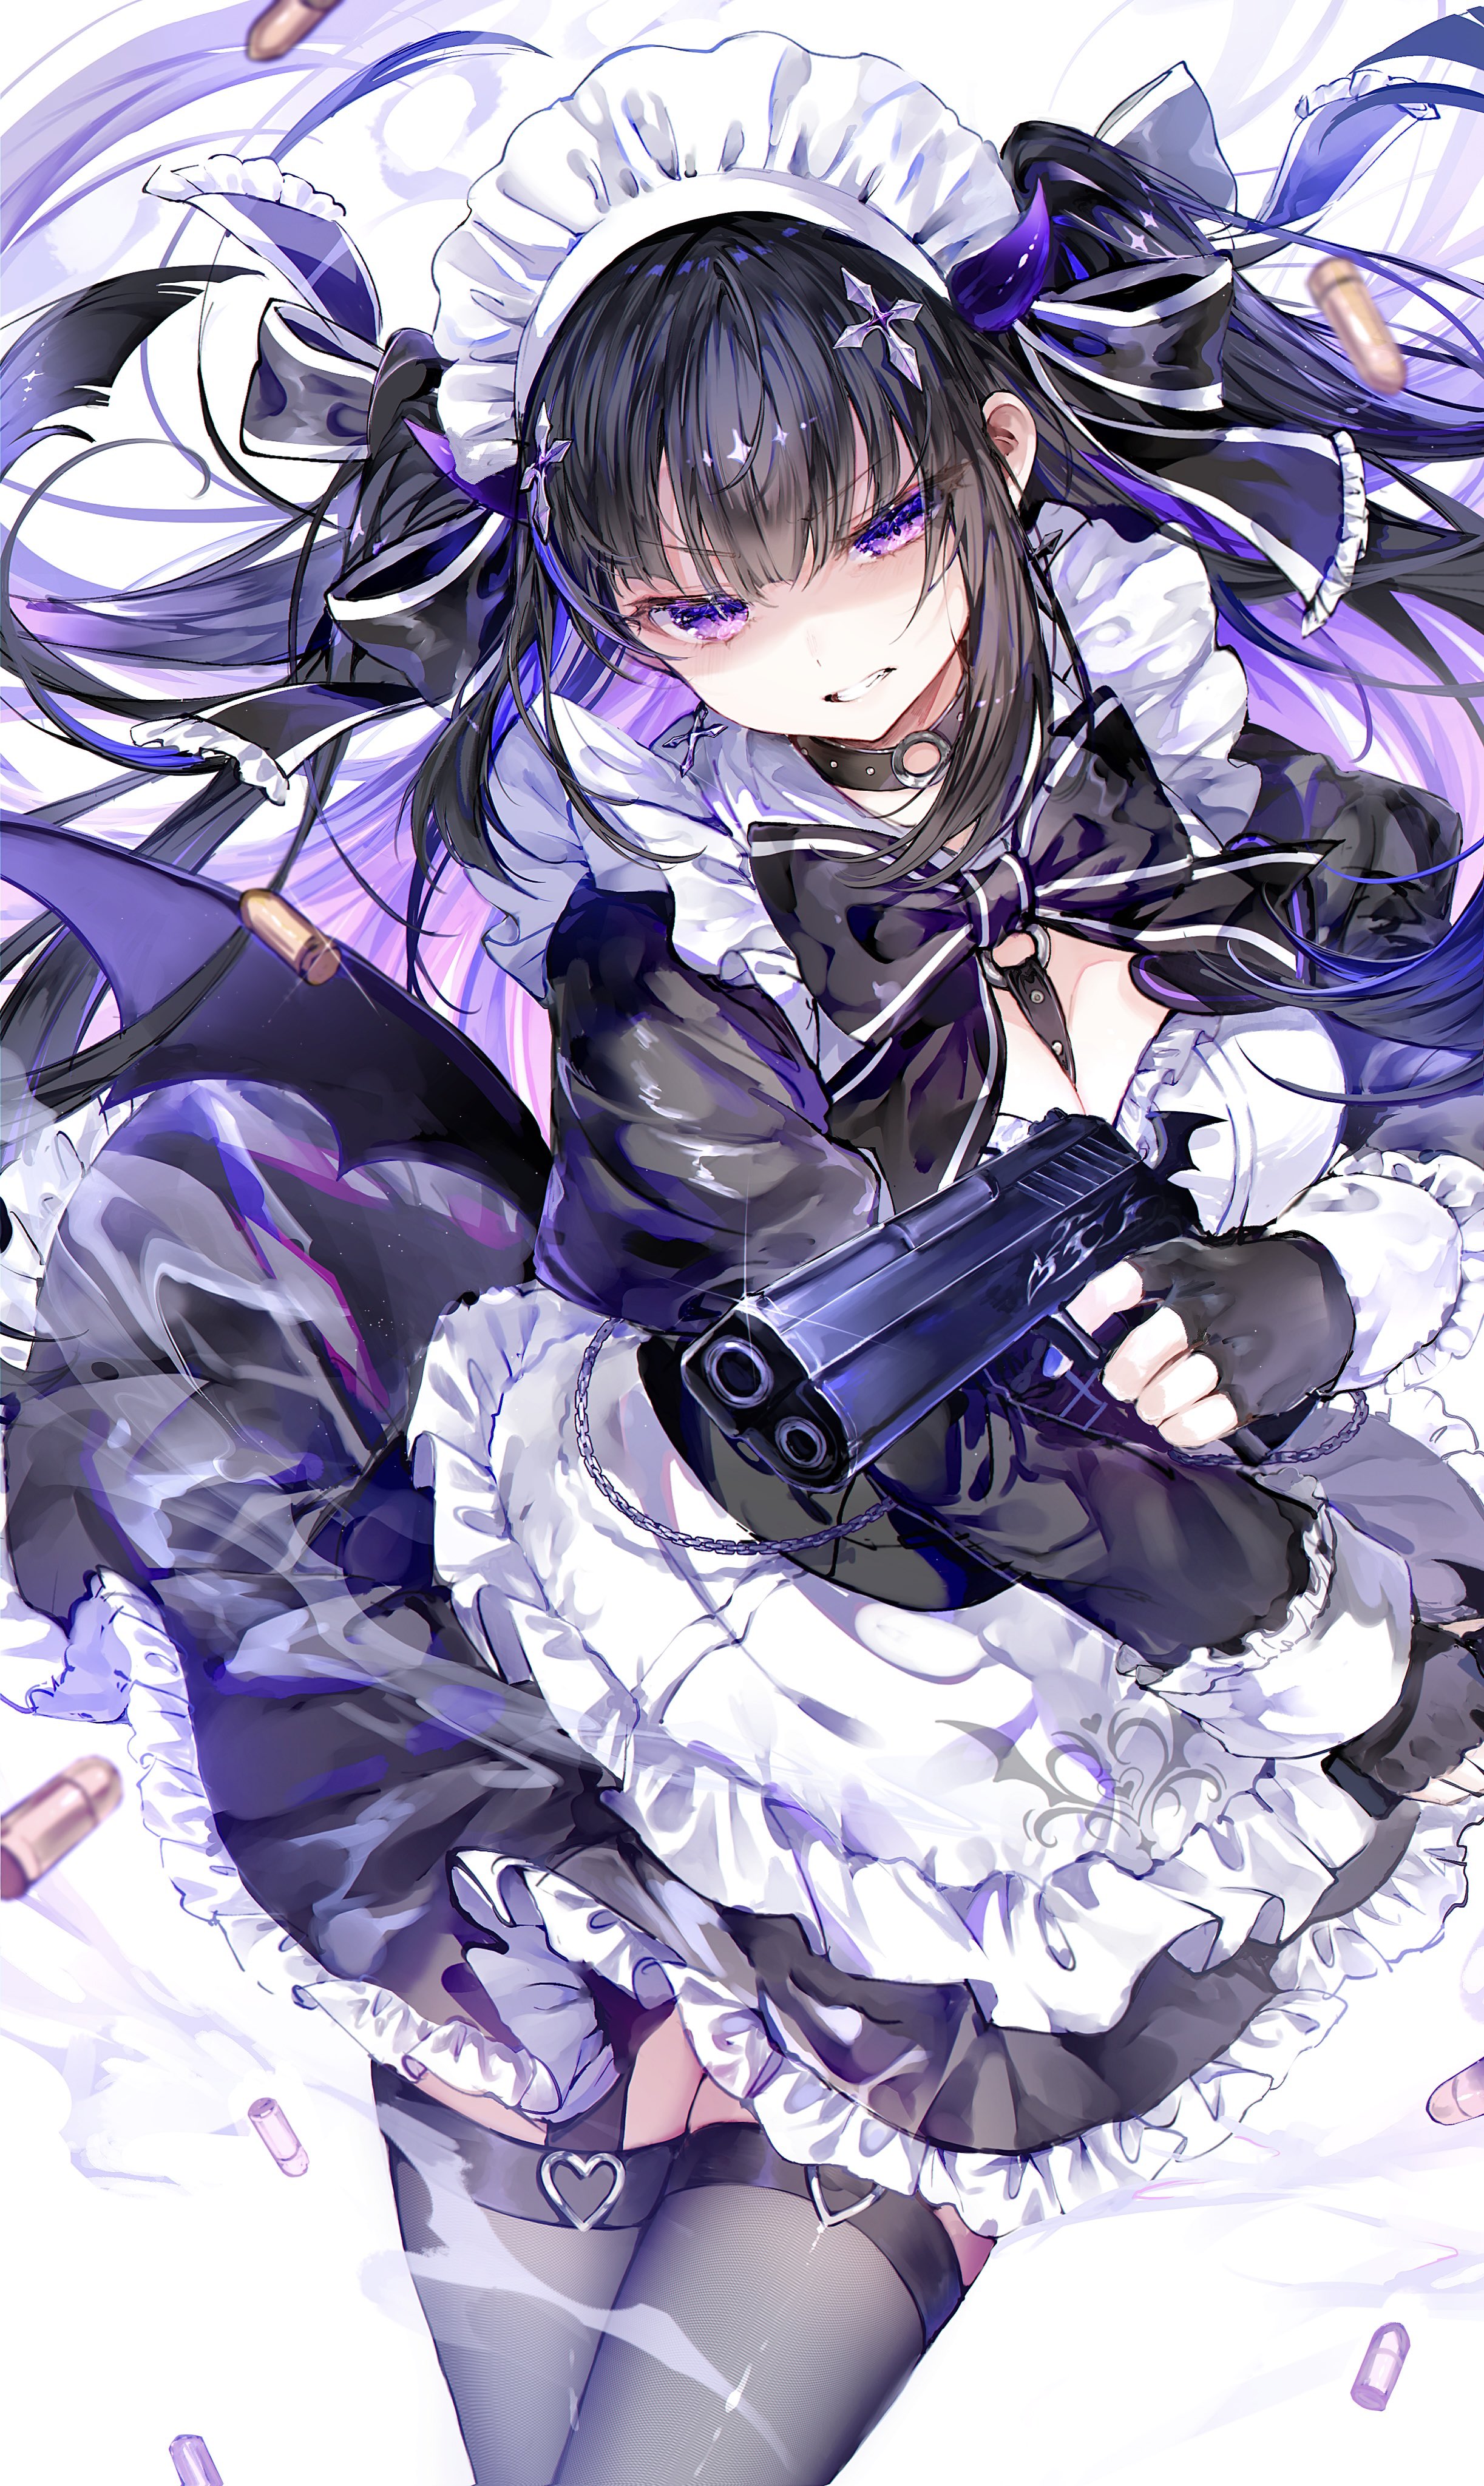 Anime Anime Girls Gun Maid Maid Outfit Long Hair Two Tone Hair Purple Eyes Horns Ammunition Wings De 2445x4096